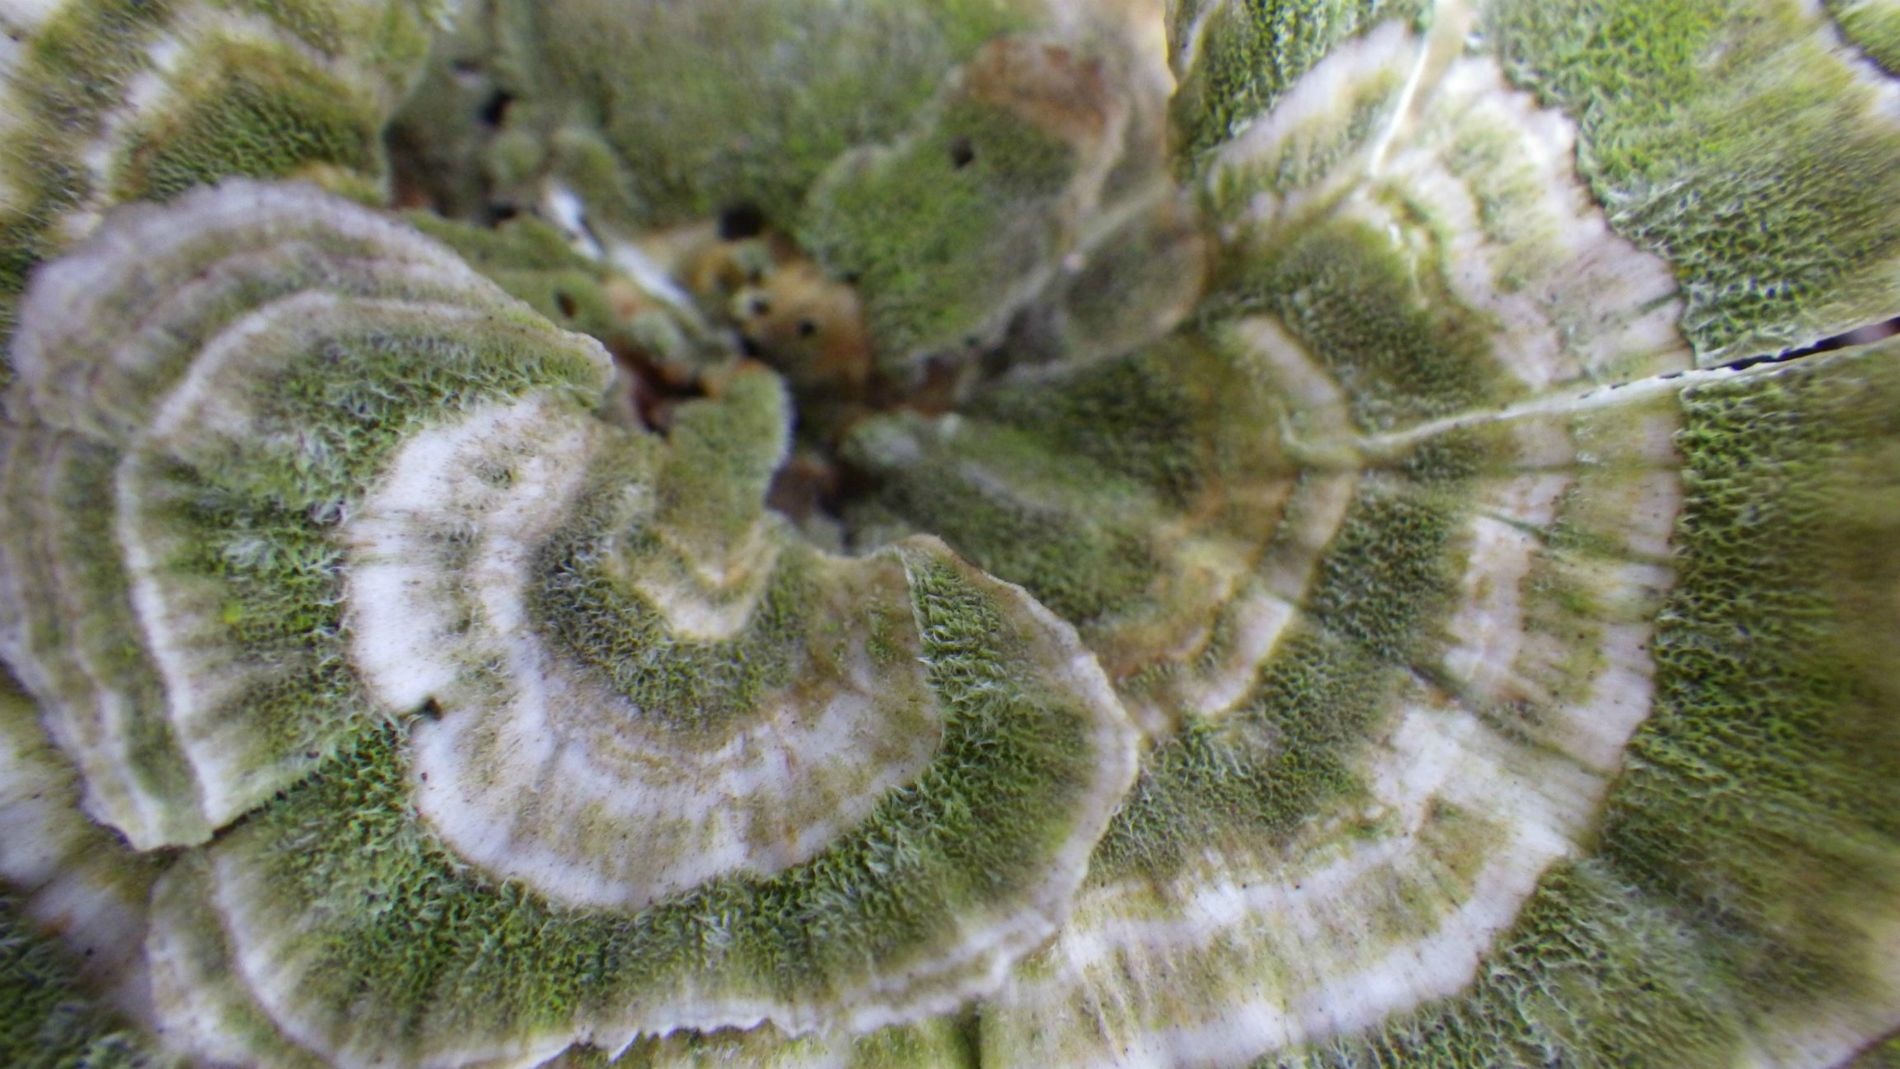 Green spirals.